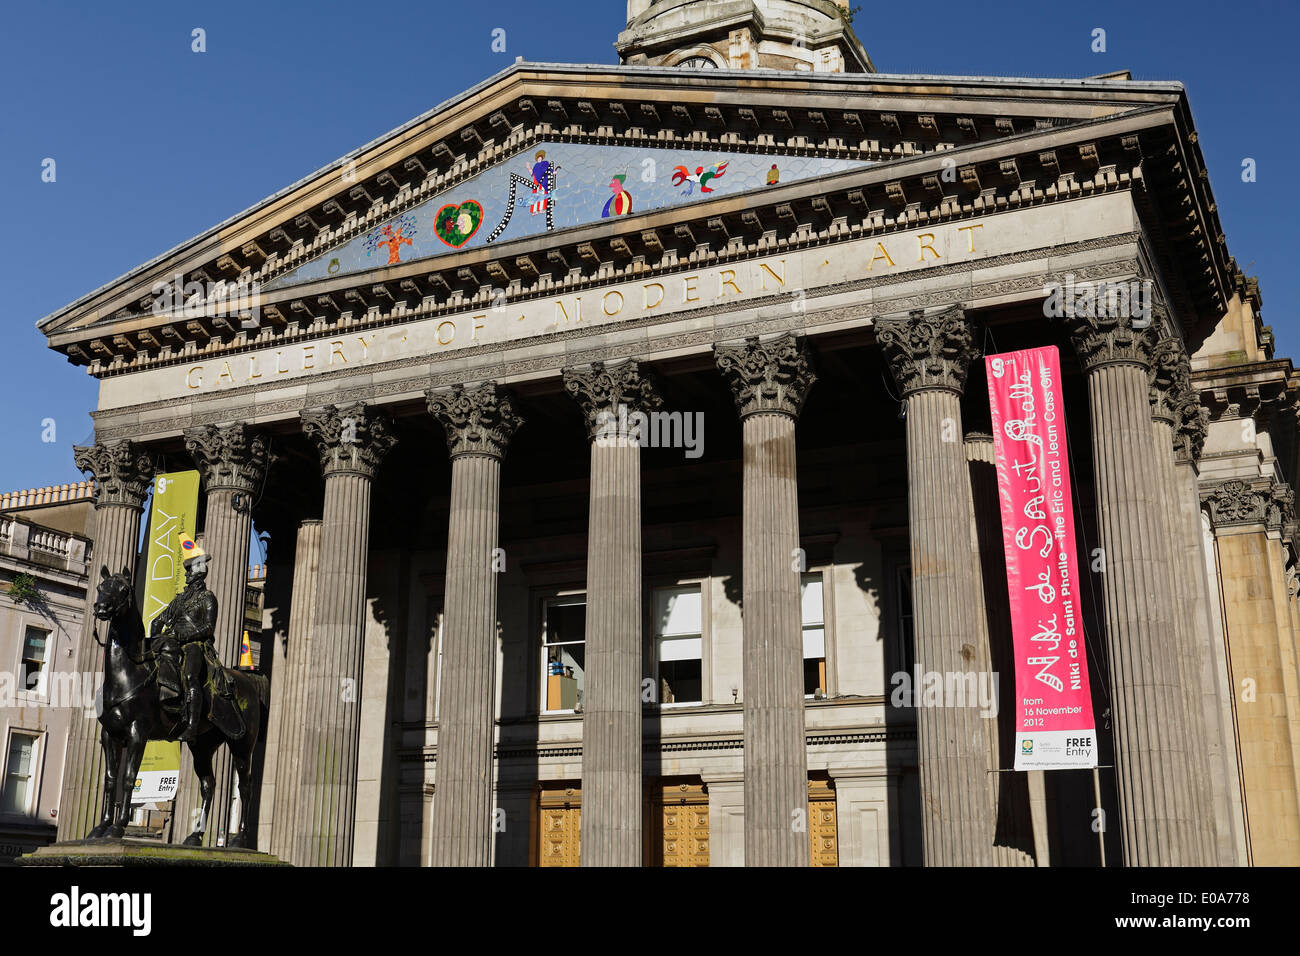 Galería de Arte moderno de Glasgow, fachada en la Plaza del Palacio Real / Calle Queen en el centro de la ciudad, Escocia, Reino Unido Foto de stock